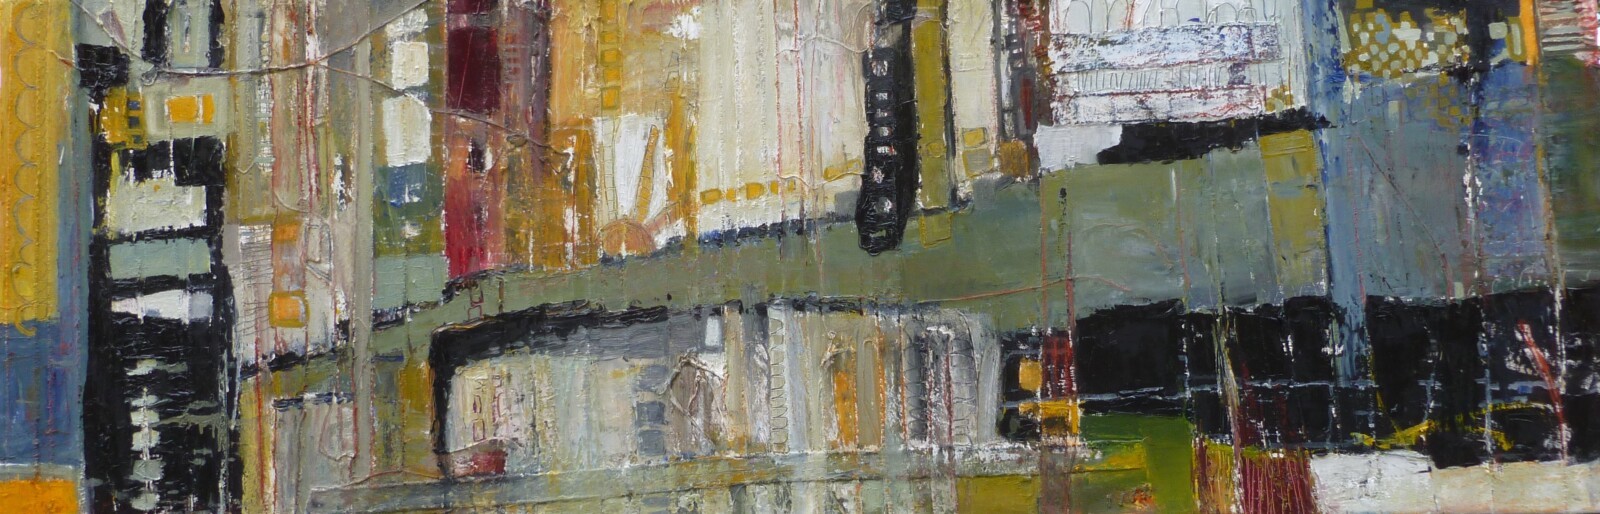 Anna Macrae, Main Street, oils on canvas